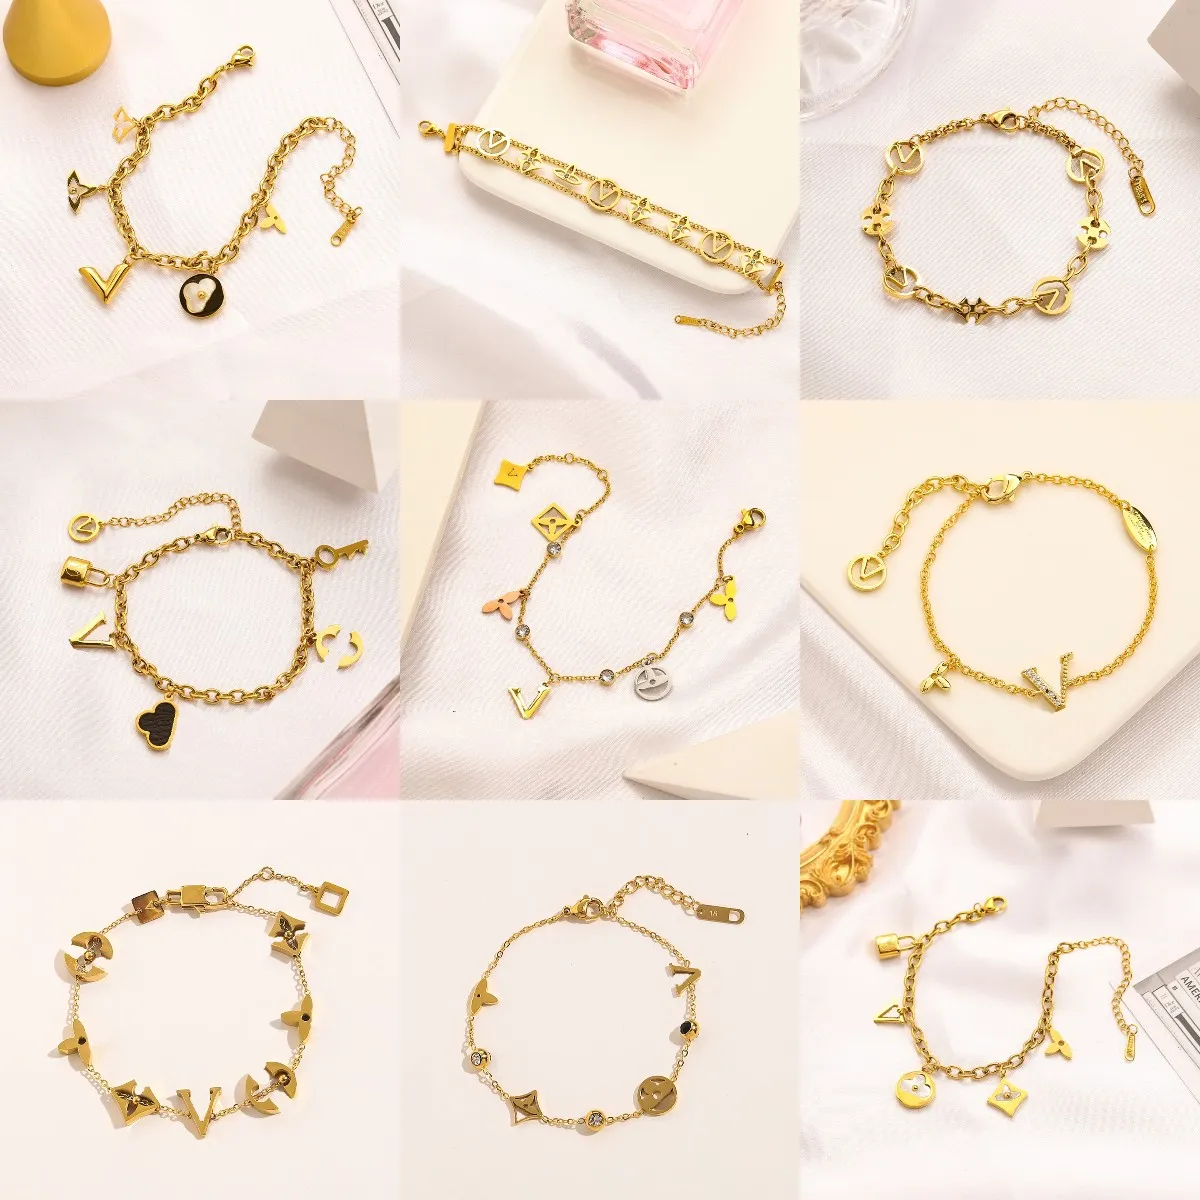 Berühmte Designer -Armbänder Luxus Goldkette Mode Schmuck Mädchen Perlenbrief Lock Liebe Armband Premium Hochzeitsfeier Schmuckzubehör Accessoires